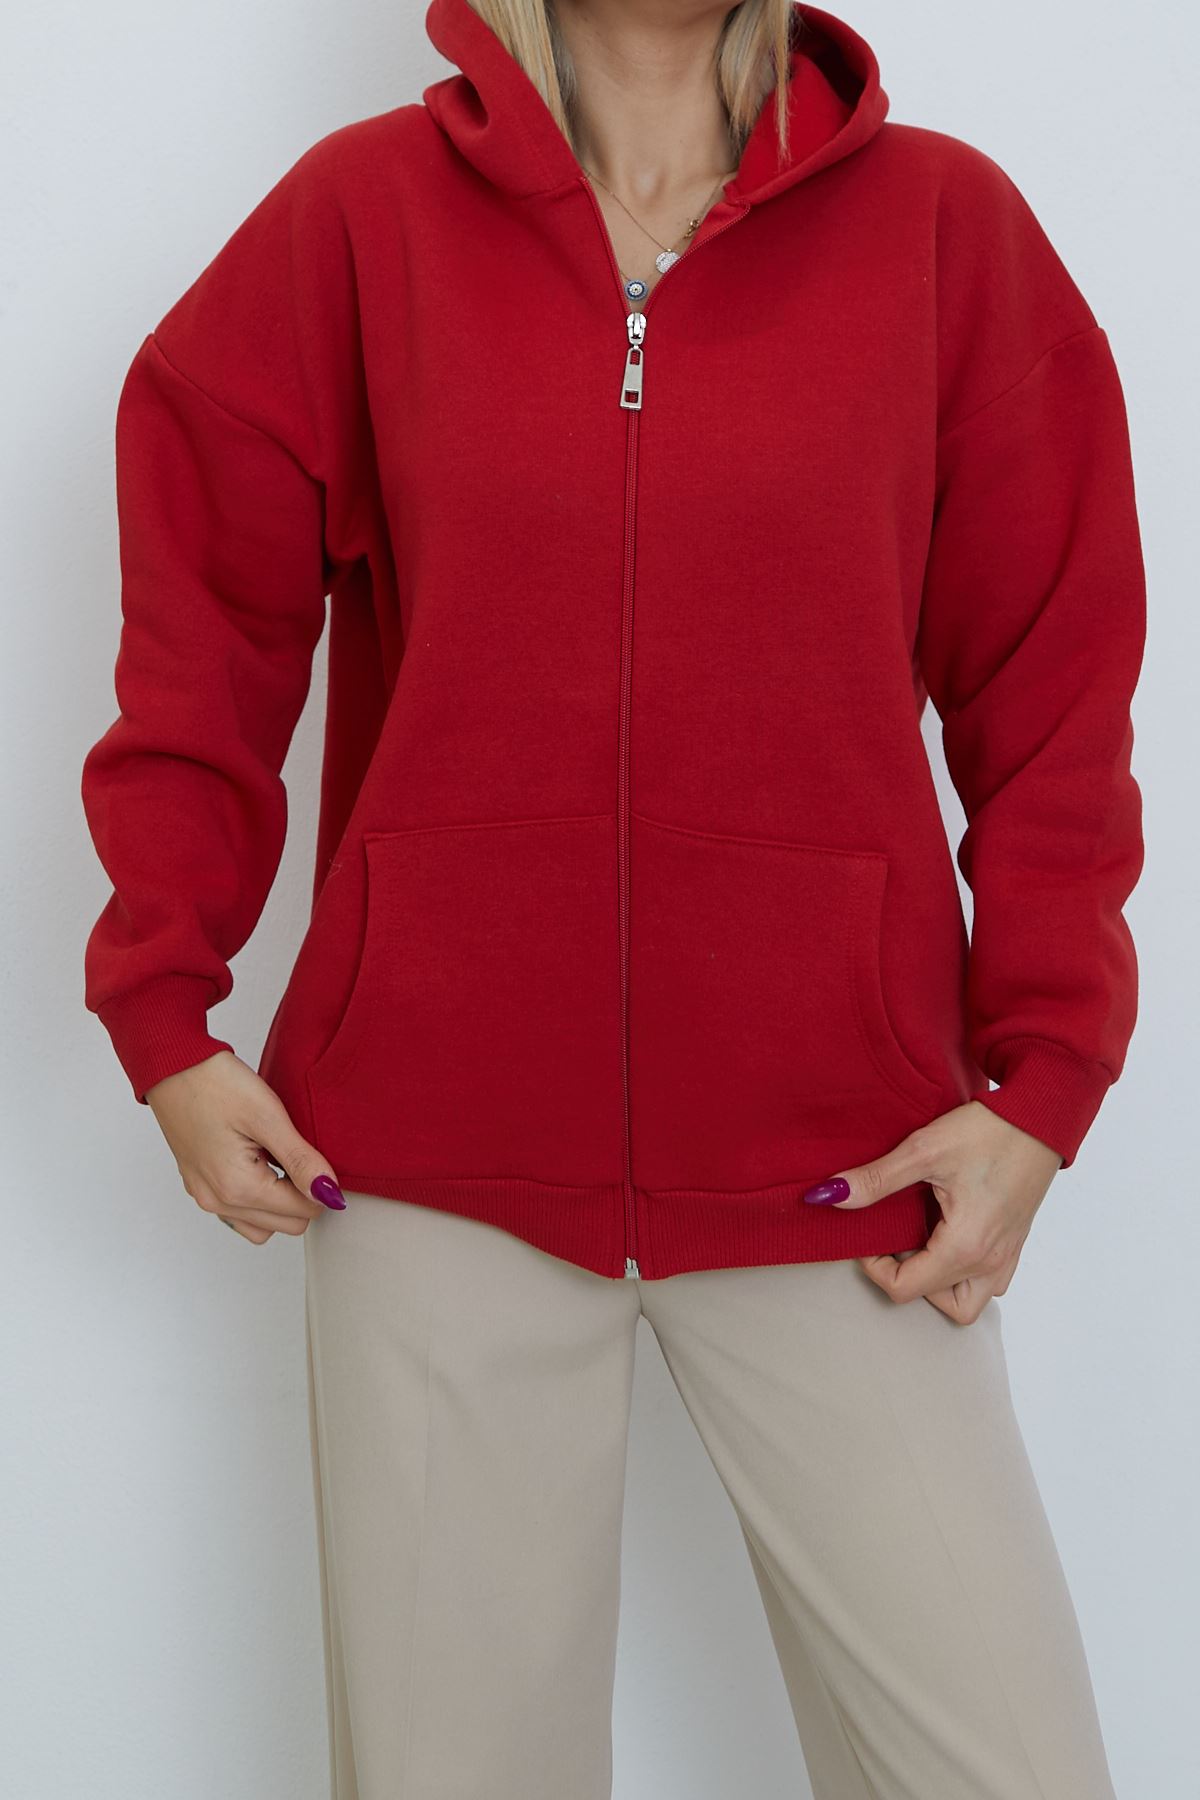 Ön Fermuarlı Kapşonlu Sweatshirt Hırka-Kırmızı